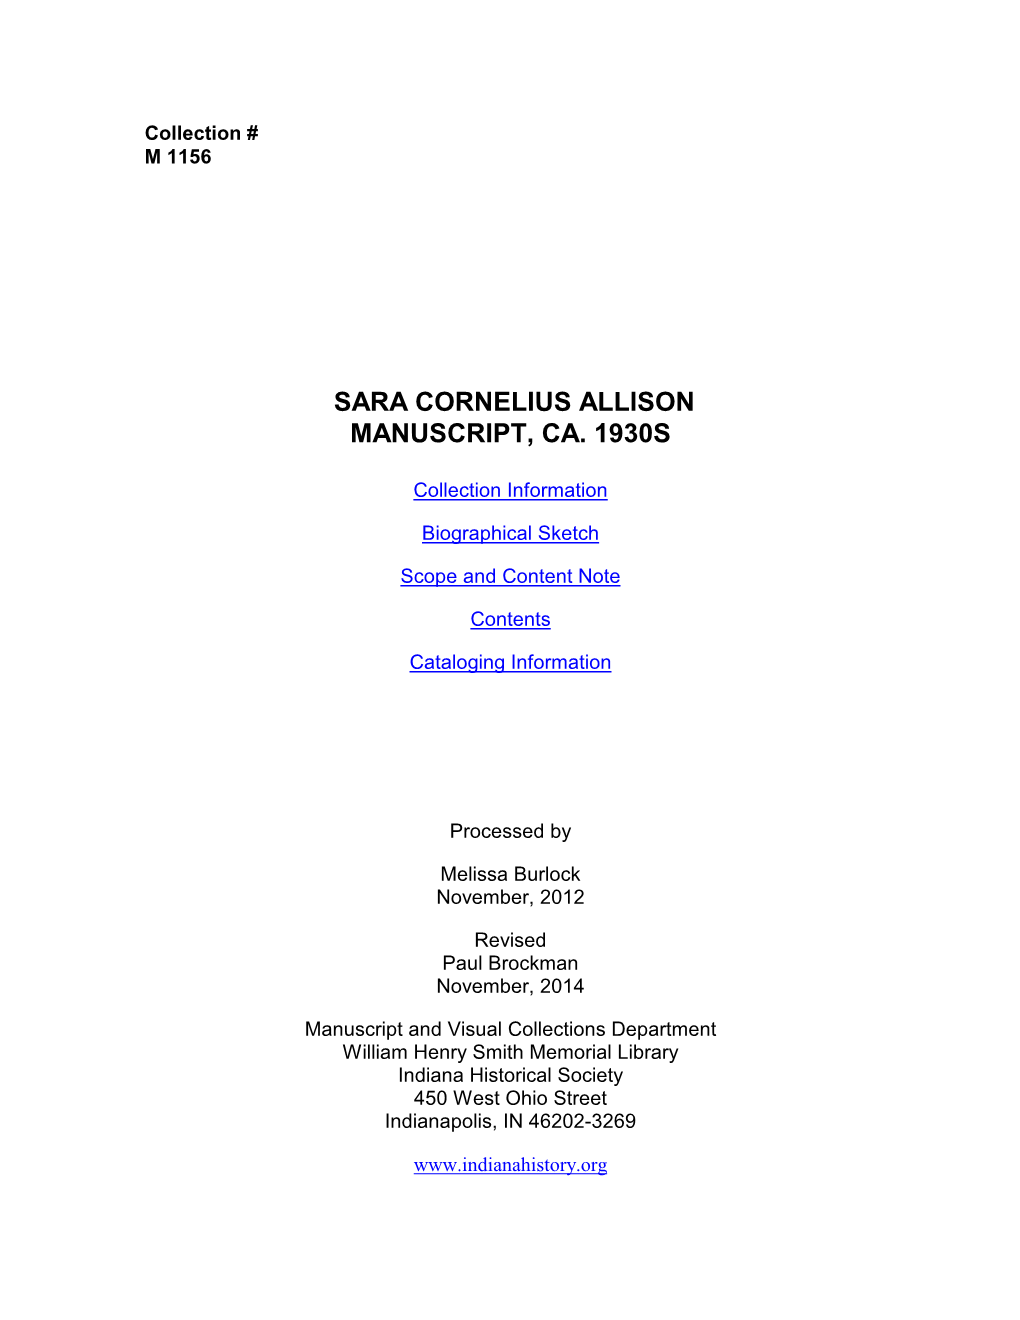 Sara Cornelius Allison Manuscript, Ca